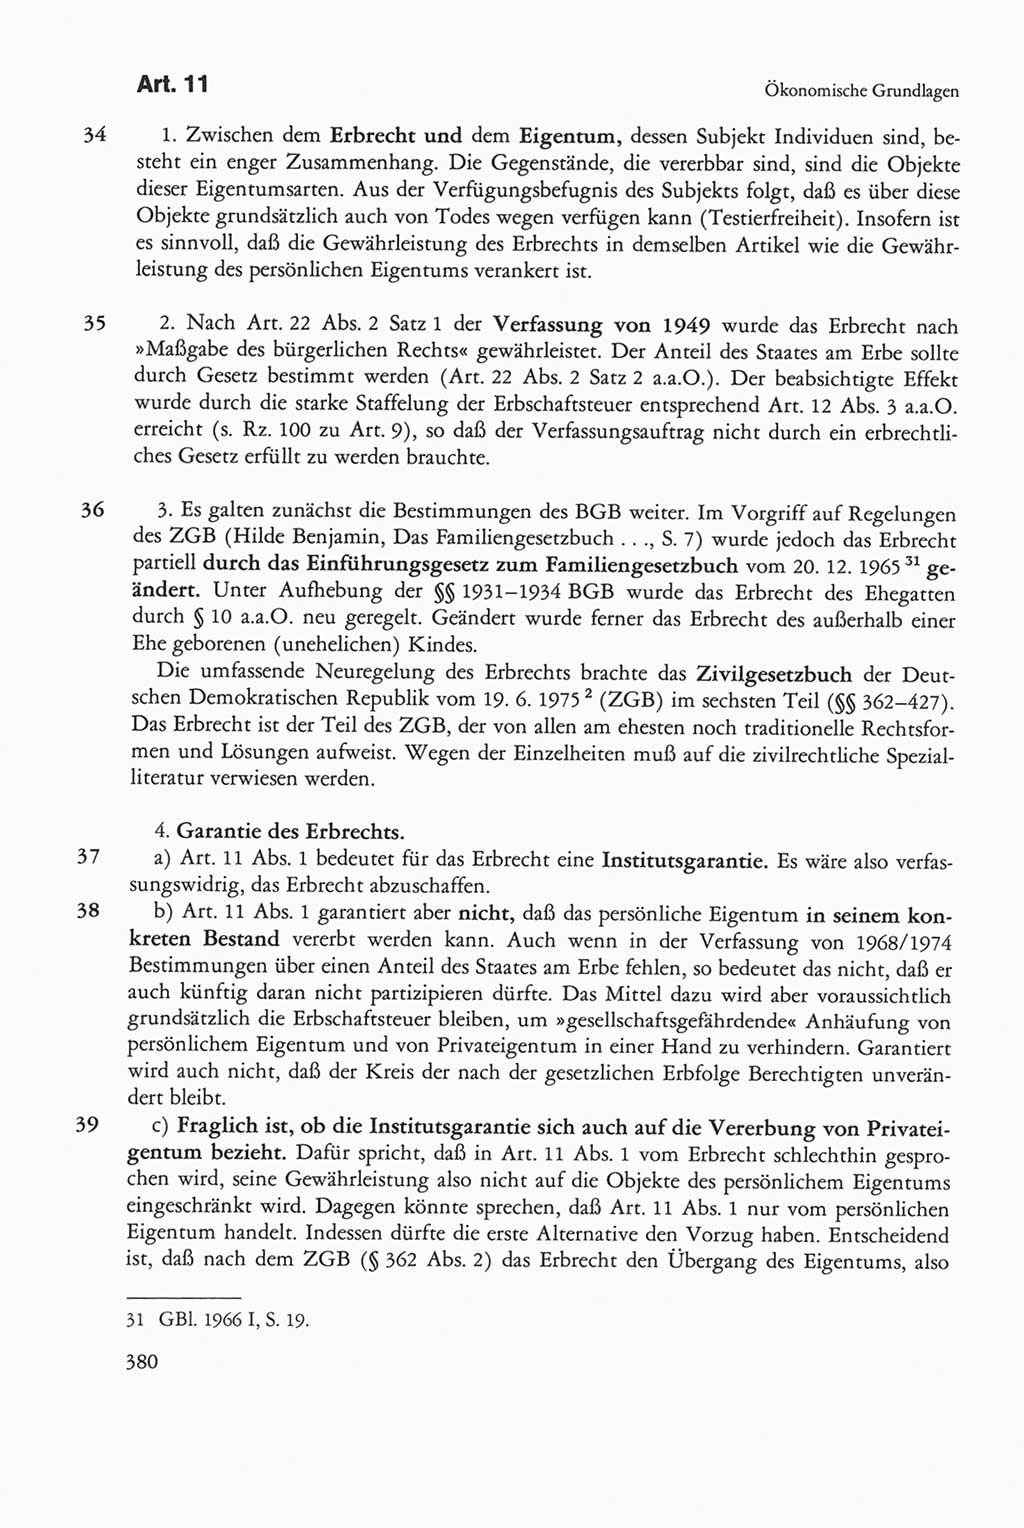 Die sozialistische Verfassung der Deutschen Demokratischen Republik (DDR), Kommentar 1982, Seite 380 (Soz. Verf. DDR Komm. 1982, S. 380)